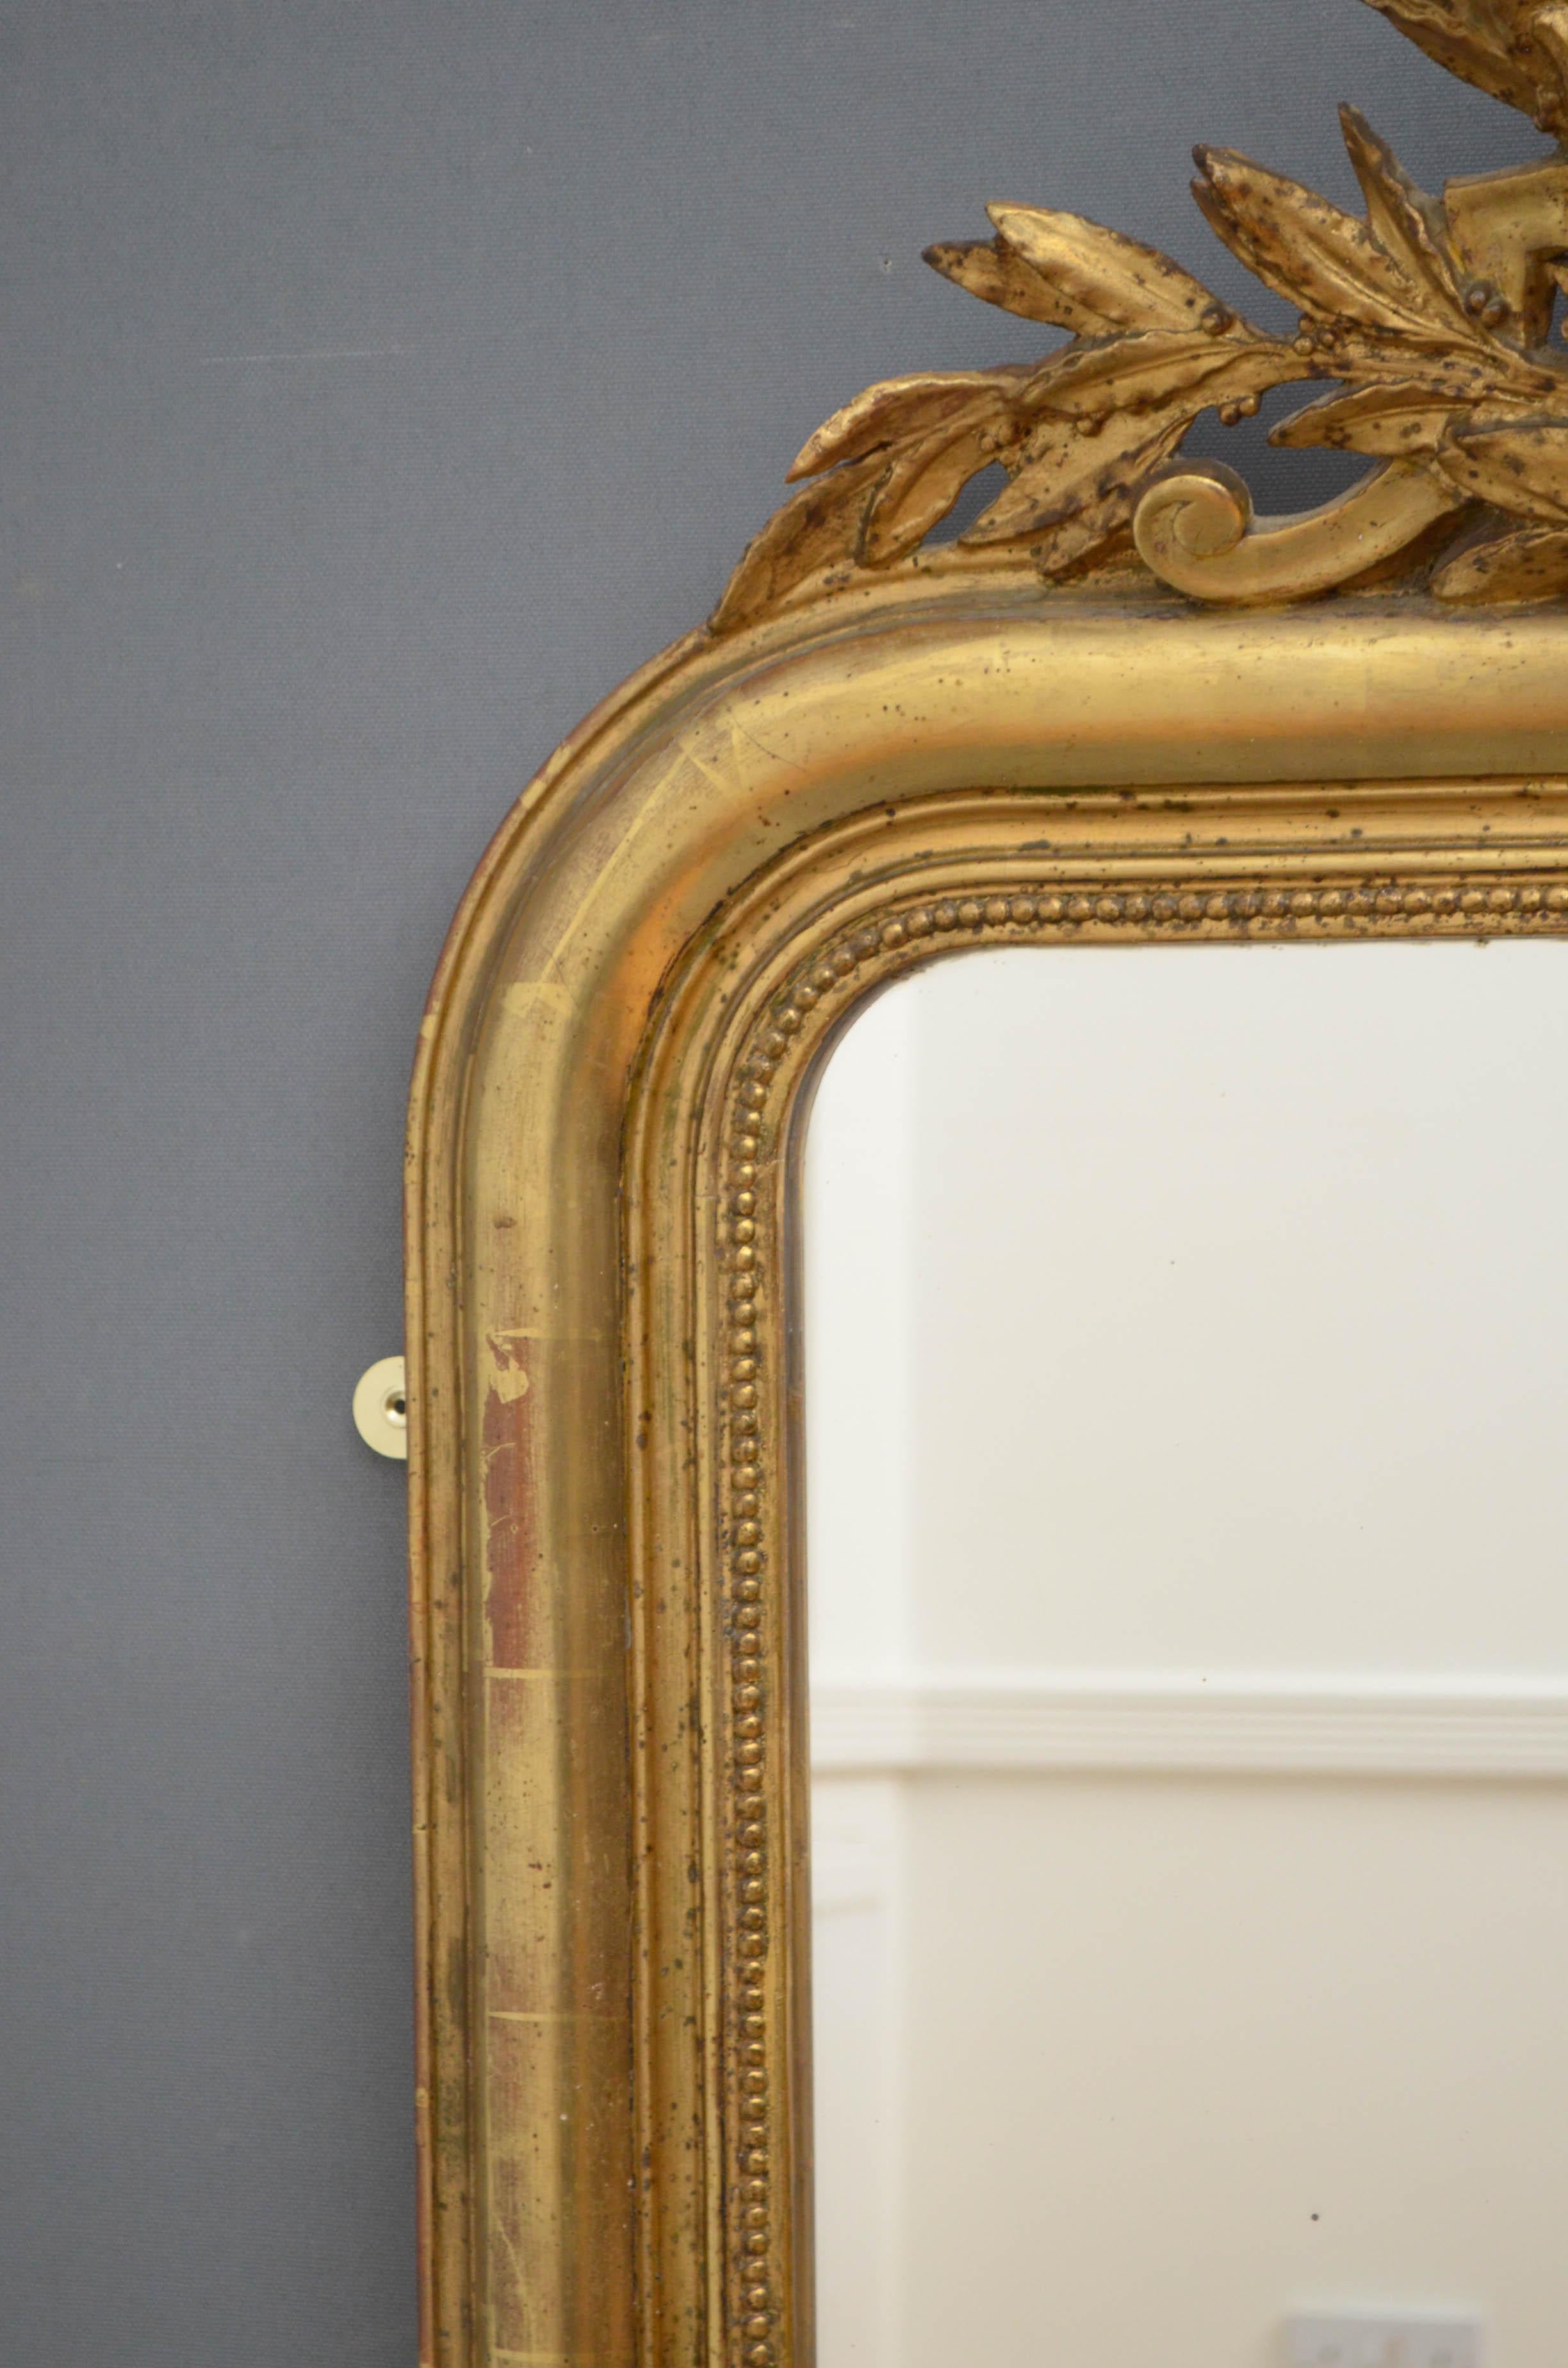 Sn4805, sehr attraktiver vergoldeter Spiegel aus dem 19. Jahrhundert, mit originalem Glas mit einigen Stockflecken, in einem dekorativen Rahmen mit Blattrollen an der Basis und einem Blattkamm an der Oberseite, der einen kleinen Spiegel mit